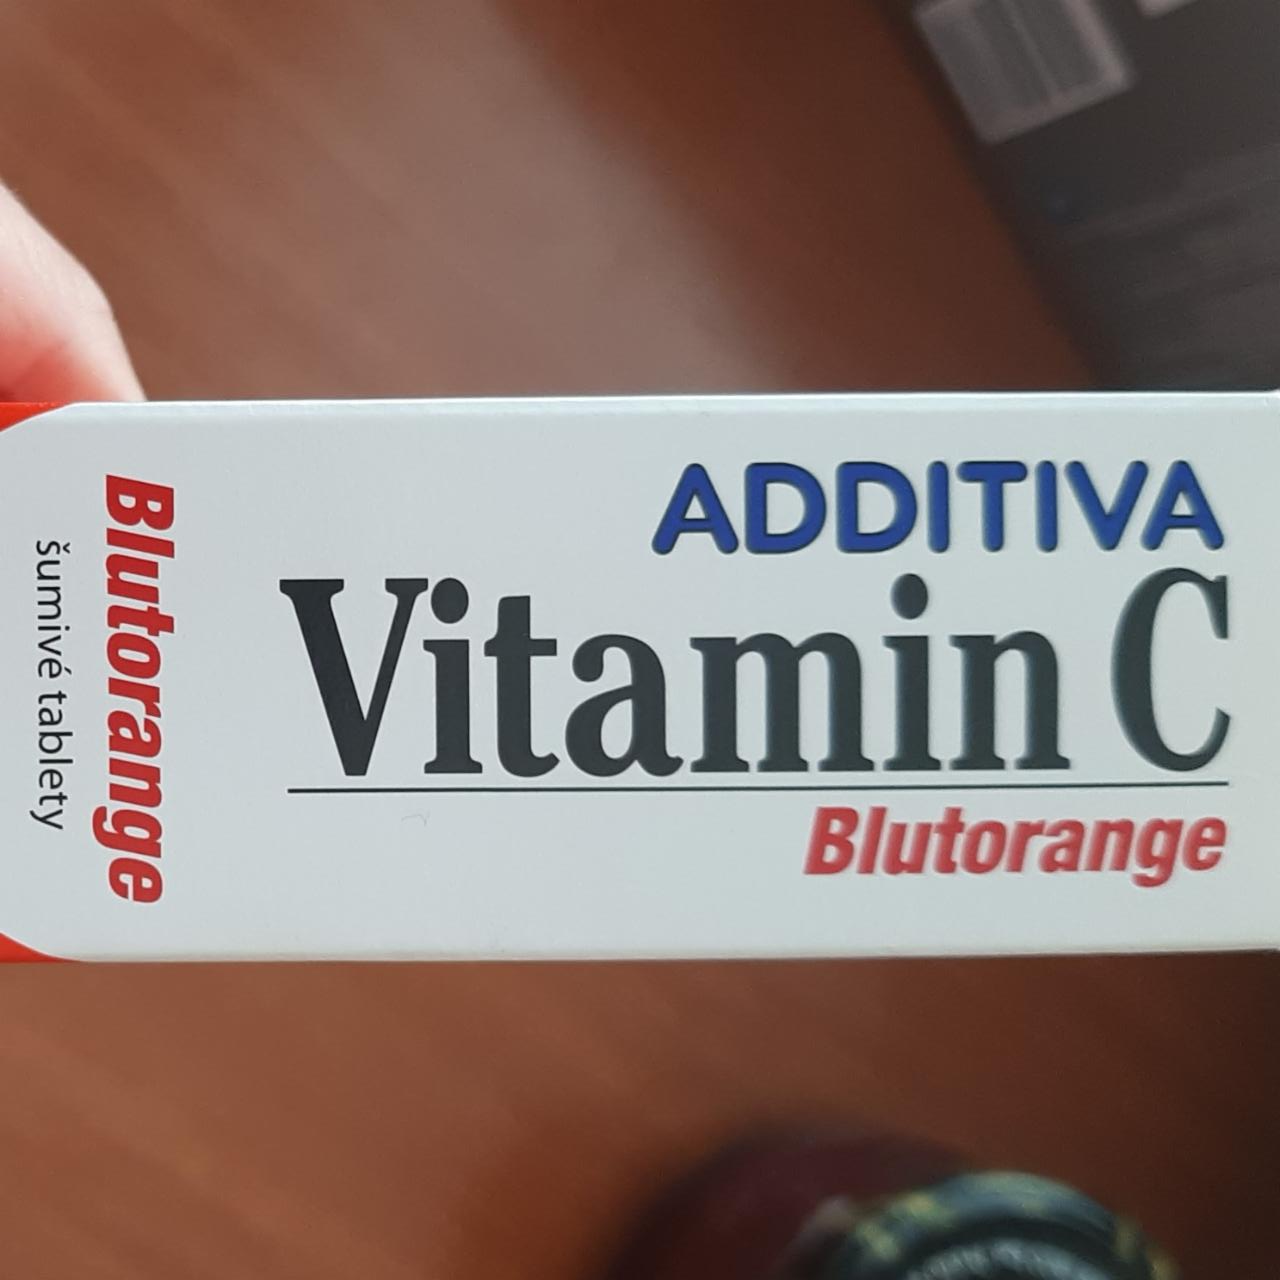 Fotografie - Vitamin C Blutorange Additiva